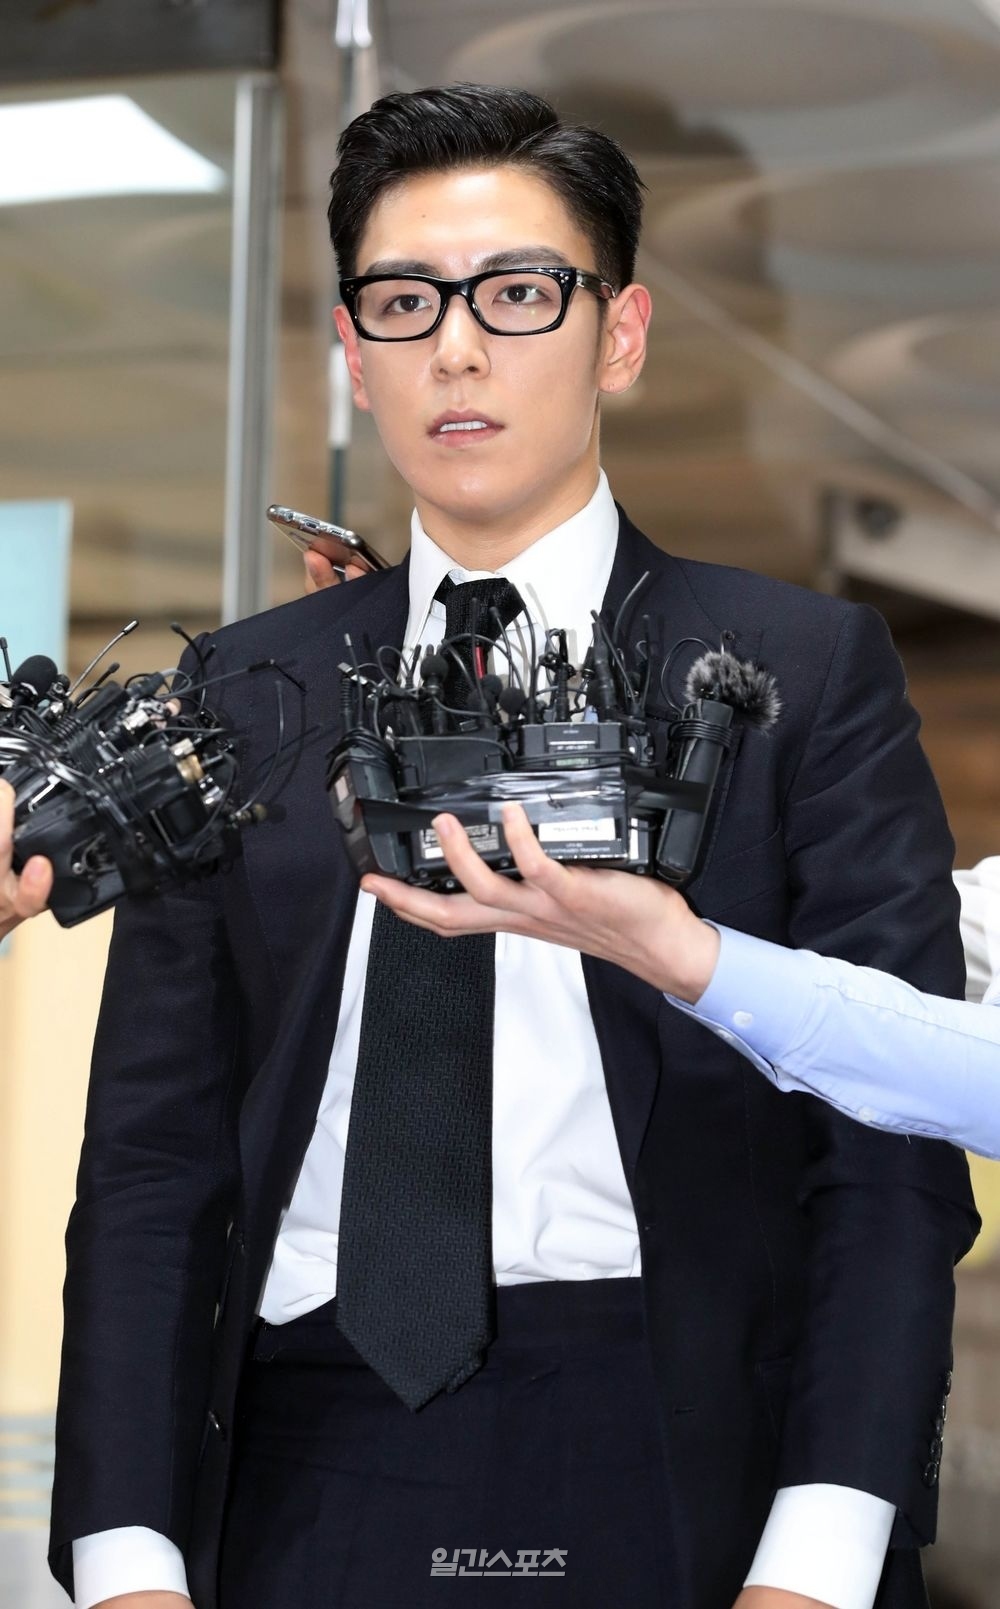  
Ngoại trừ Taeyang, các thành viên còn lại của BIGBANG đều vướng phải scandal về chất cấm và kinh doanh trái phép. (Ảnh: Koreaboo)